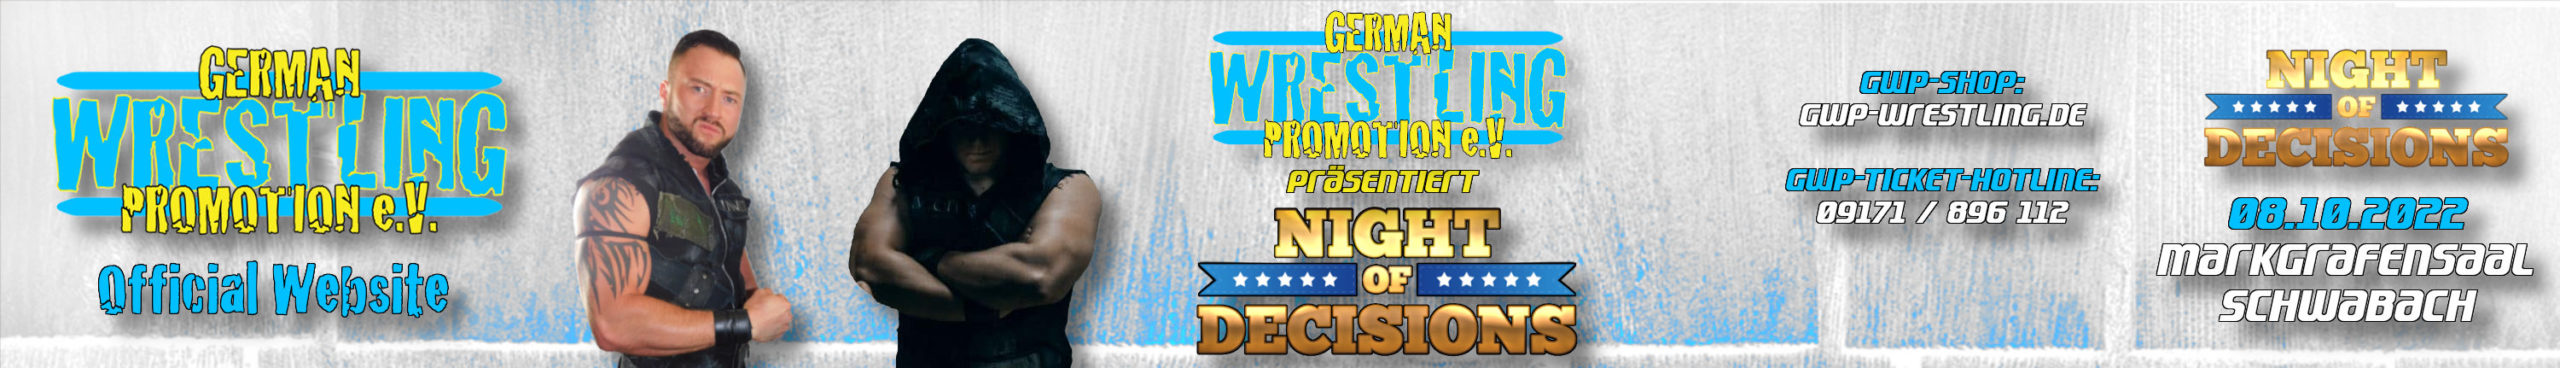 German Wrestling Promotion e.V.